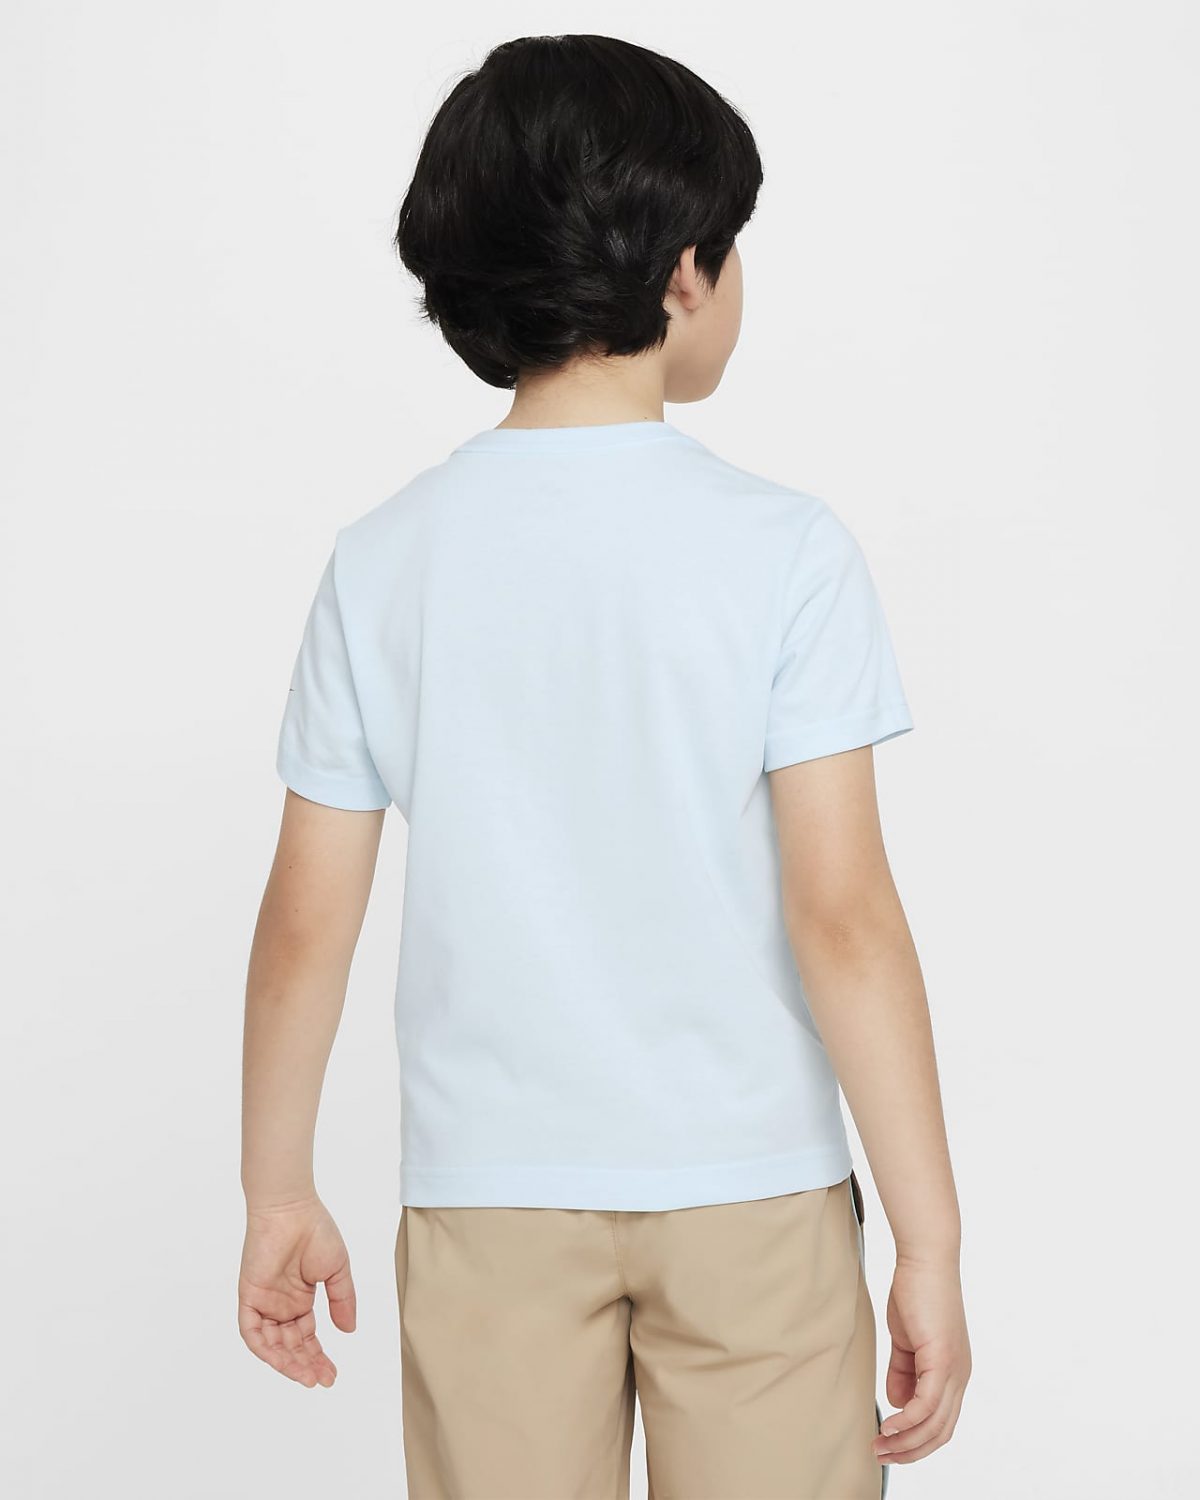 Детская футболка Nike синяя фотография